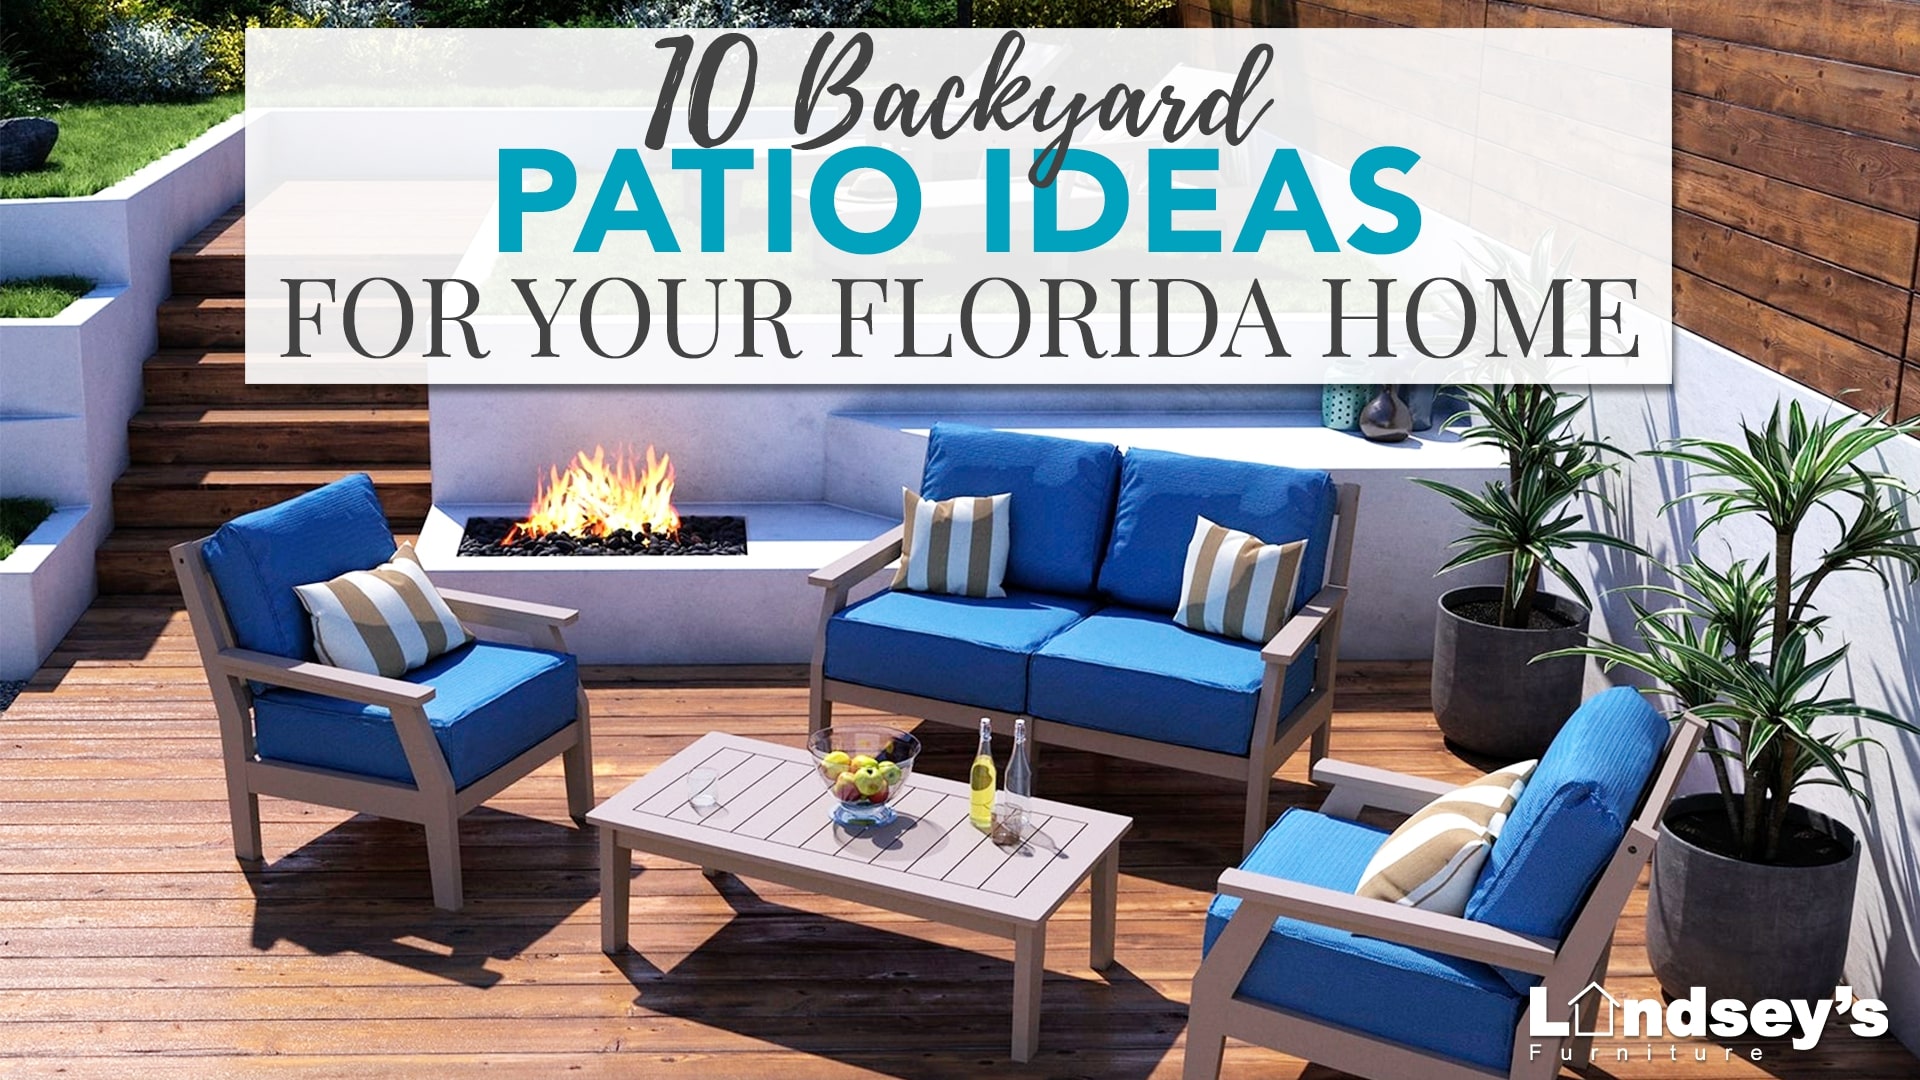 10 Backyard Patio Ideas for Your Florida Home